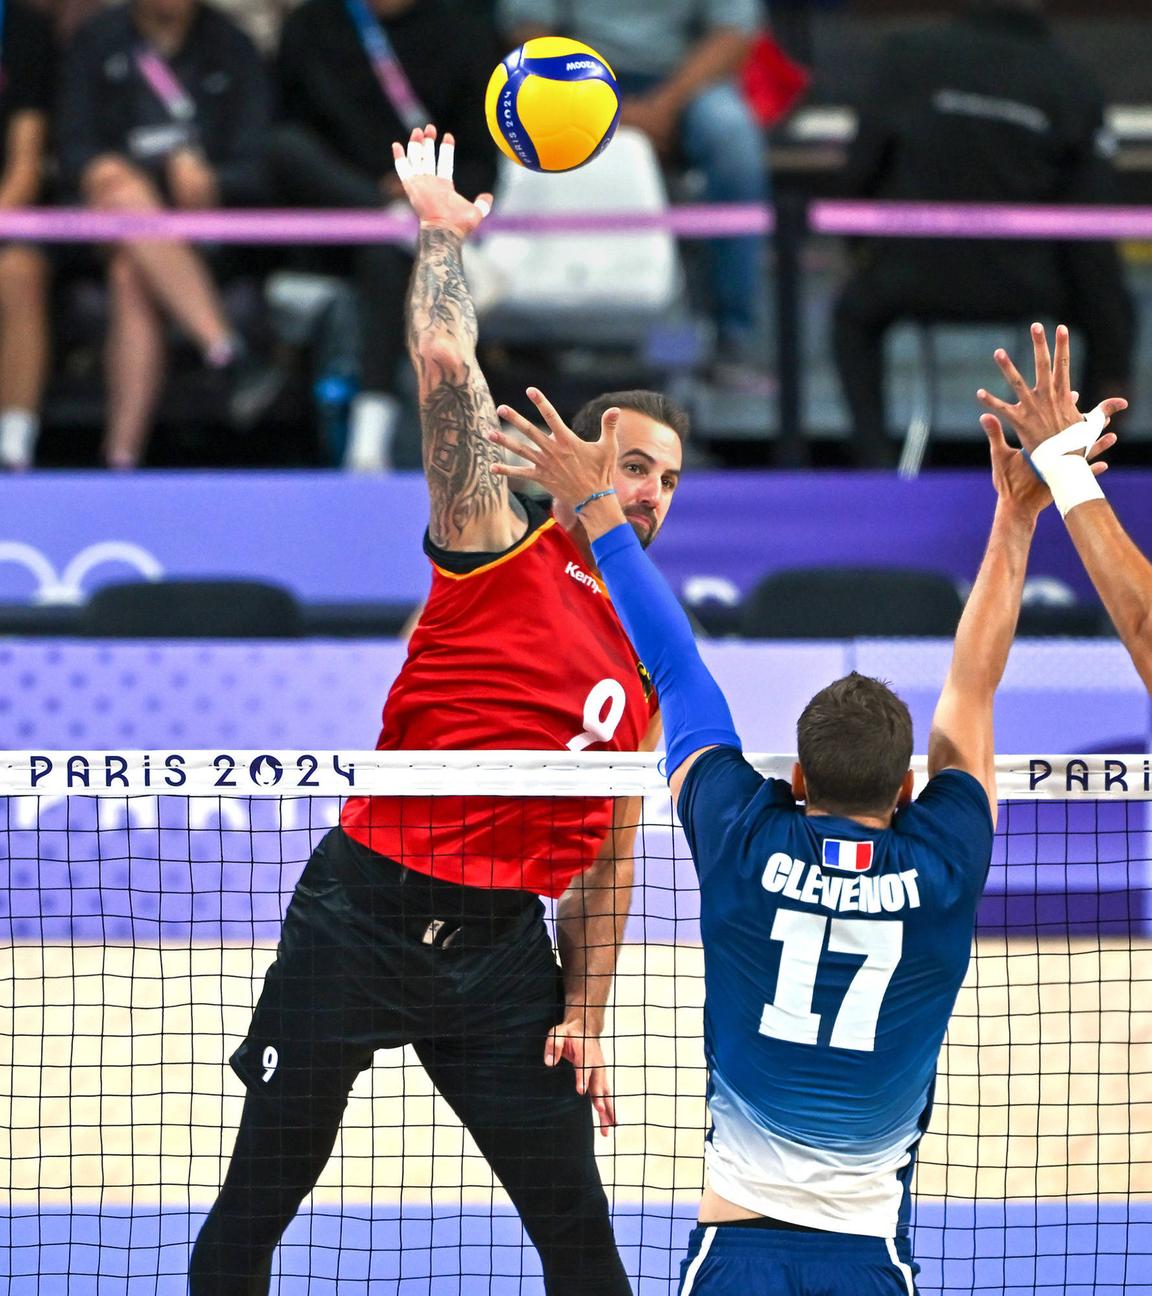 Der deustche Volleyballspieler Georg Gyorgy Grozer schlägt den Ball beim Spiel gegen Frankreich.